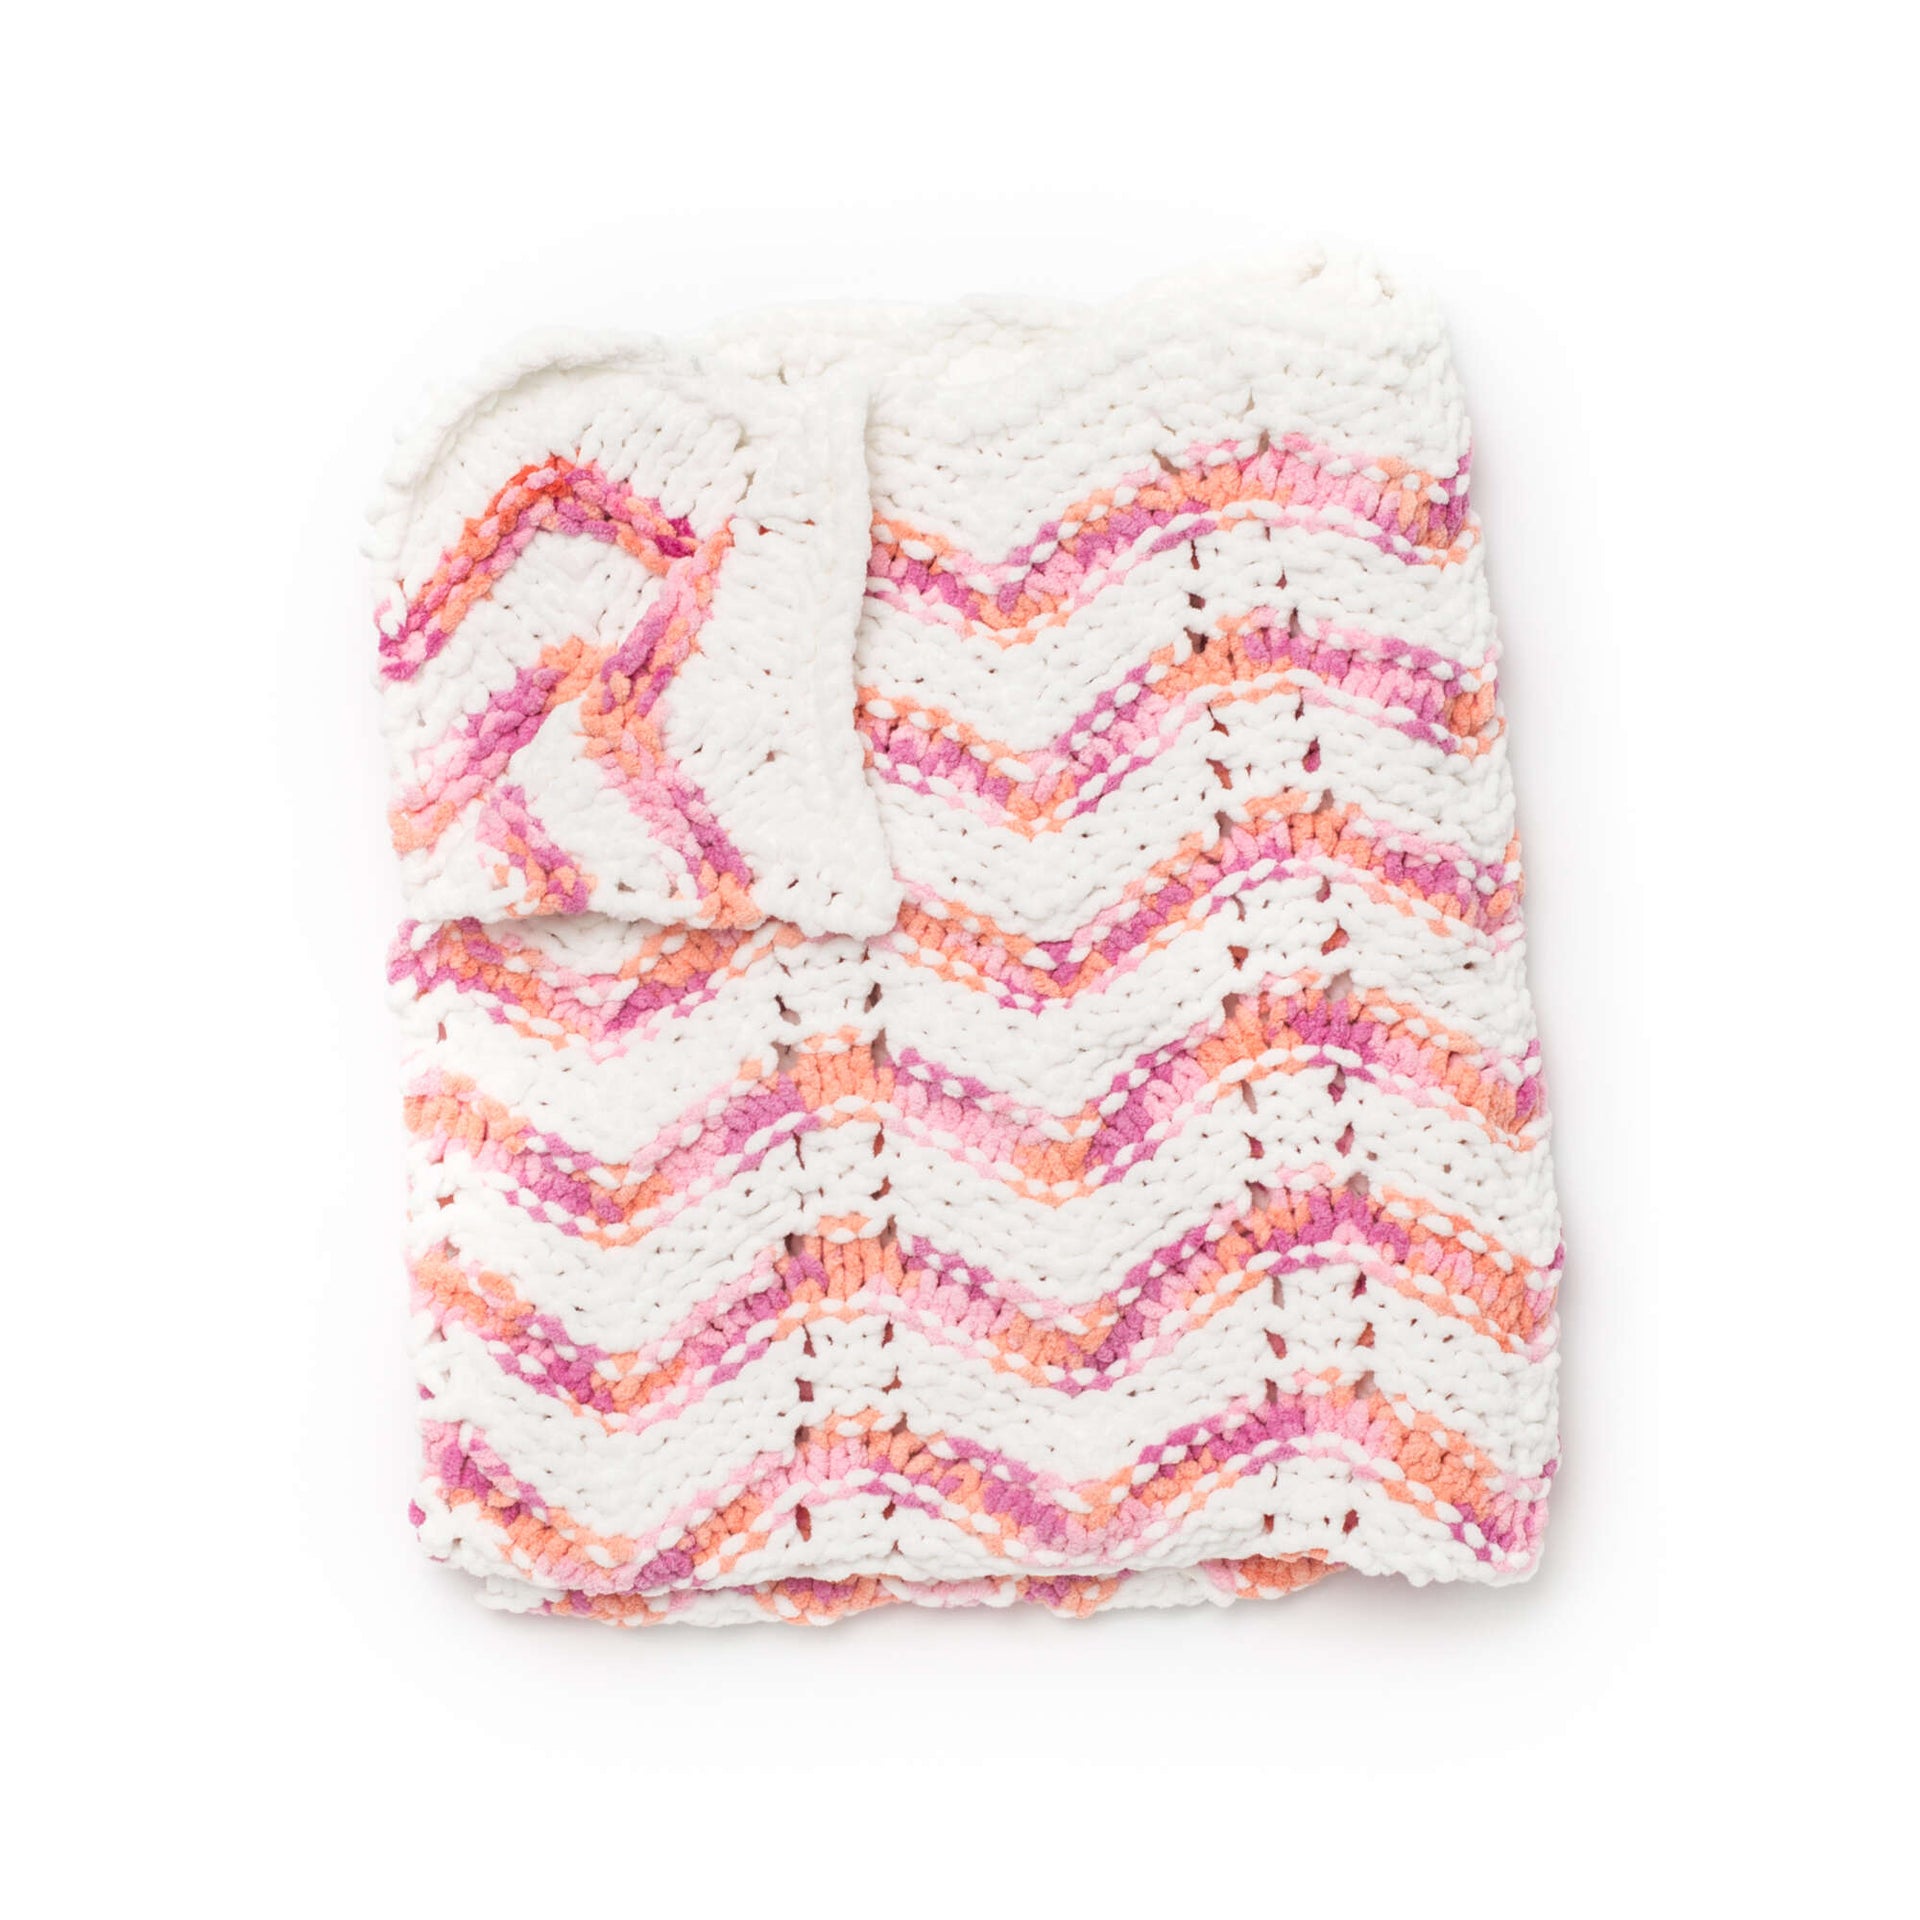 Bernat Baby Blanket Yarn-Peachy, 1 count - Pick 'n Save